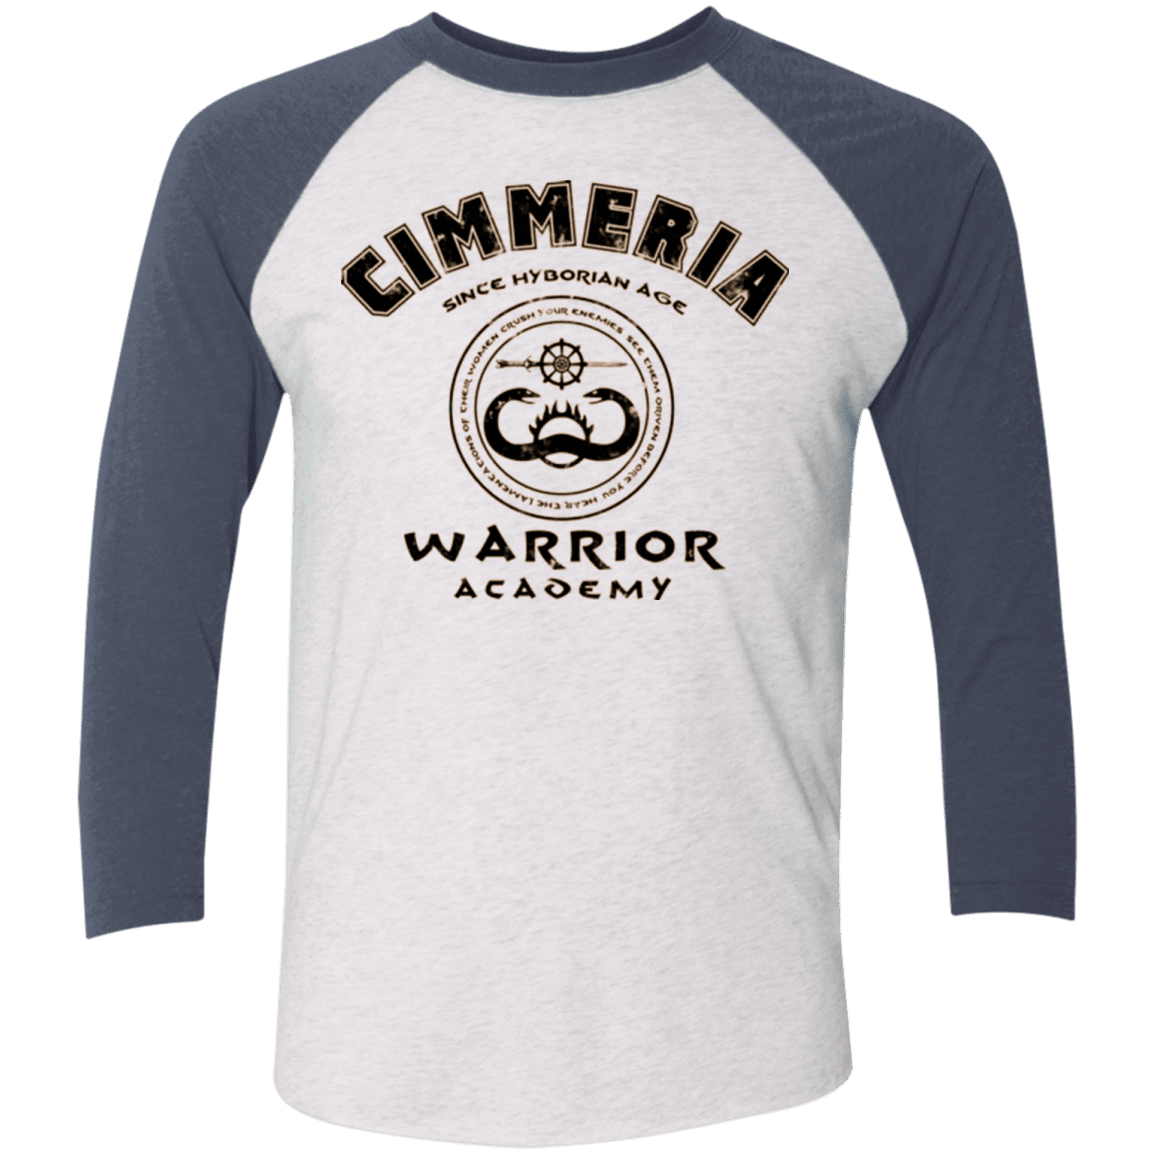 T-Shirts Heather White/Indigo / X-Small Crimmeria Warrior academy Men's Triblend 3/4 Sleeve